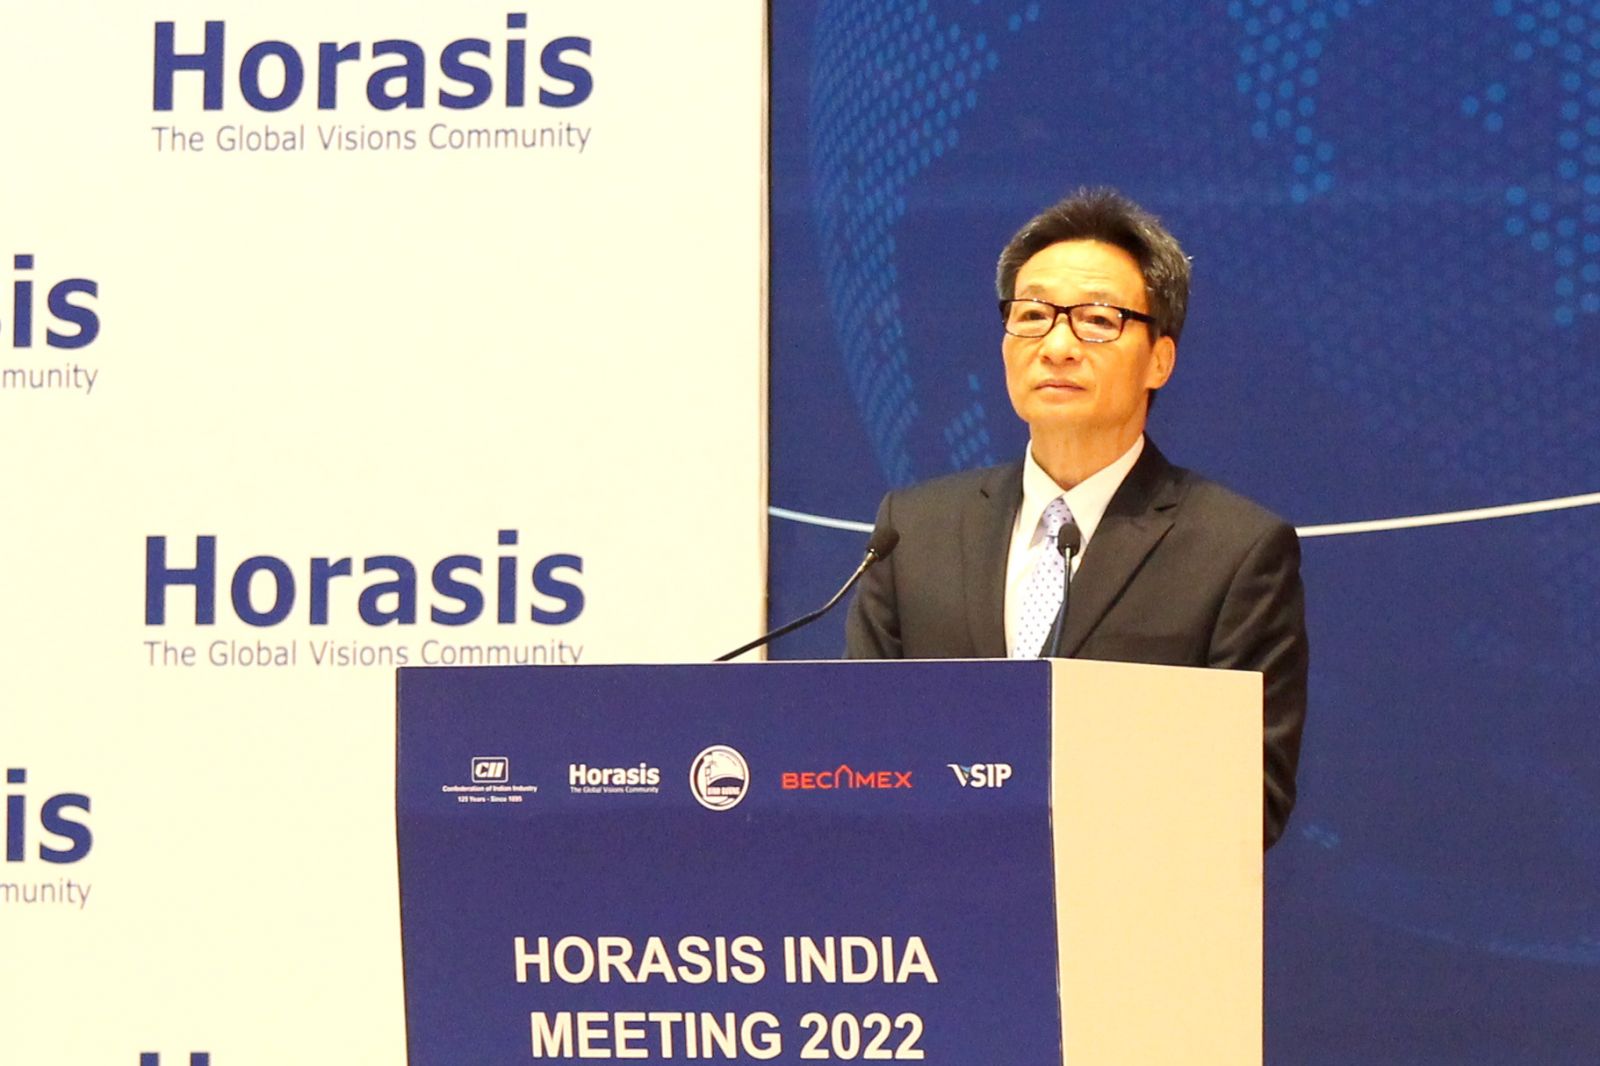 Phó Thủ tướng Vũ Đức Đam phát biểu tại Diễn đàn hợp tác kinh tế Ấn Độ Horasis năm 2022